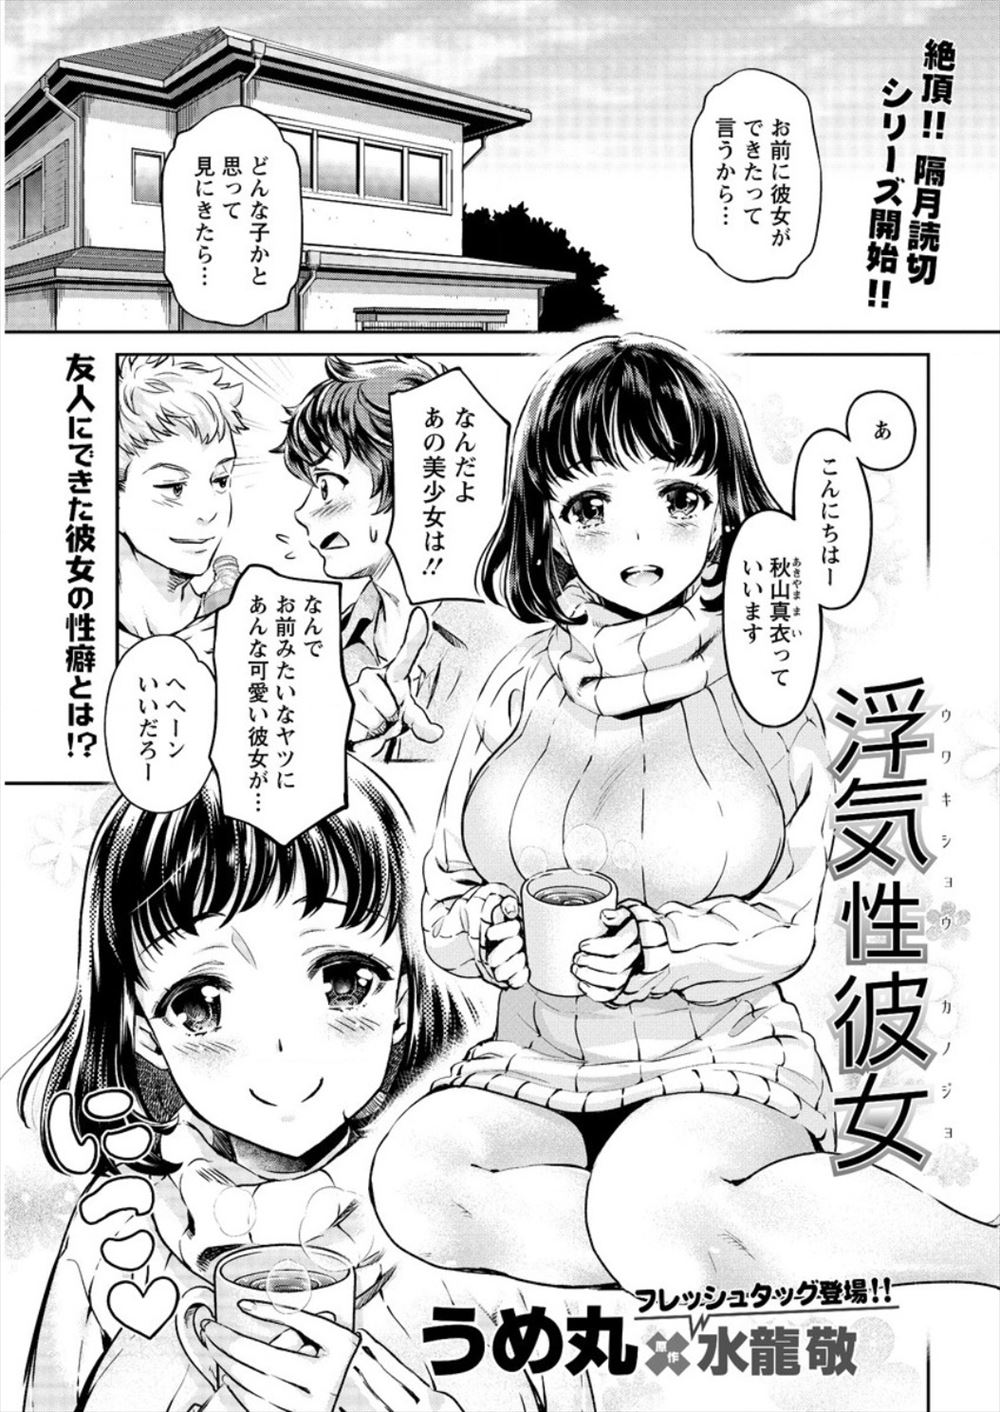 【エロ漫画】新しく出来た友達の彼女が巨乳美少女で超うらやましかったが、実は超ビッチで友達に隠れてNTRセックスしてしまったｗｗｗ